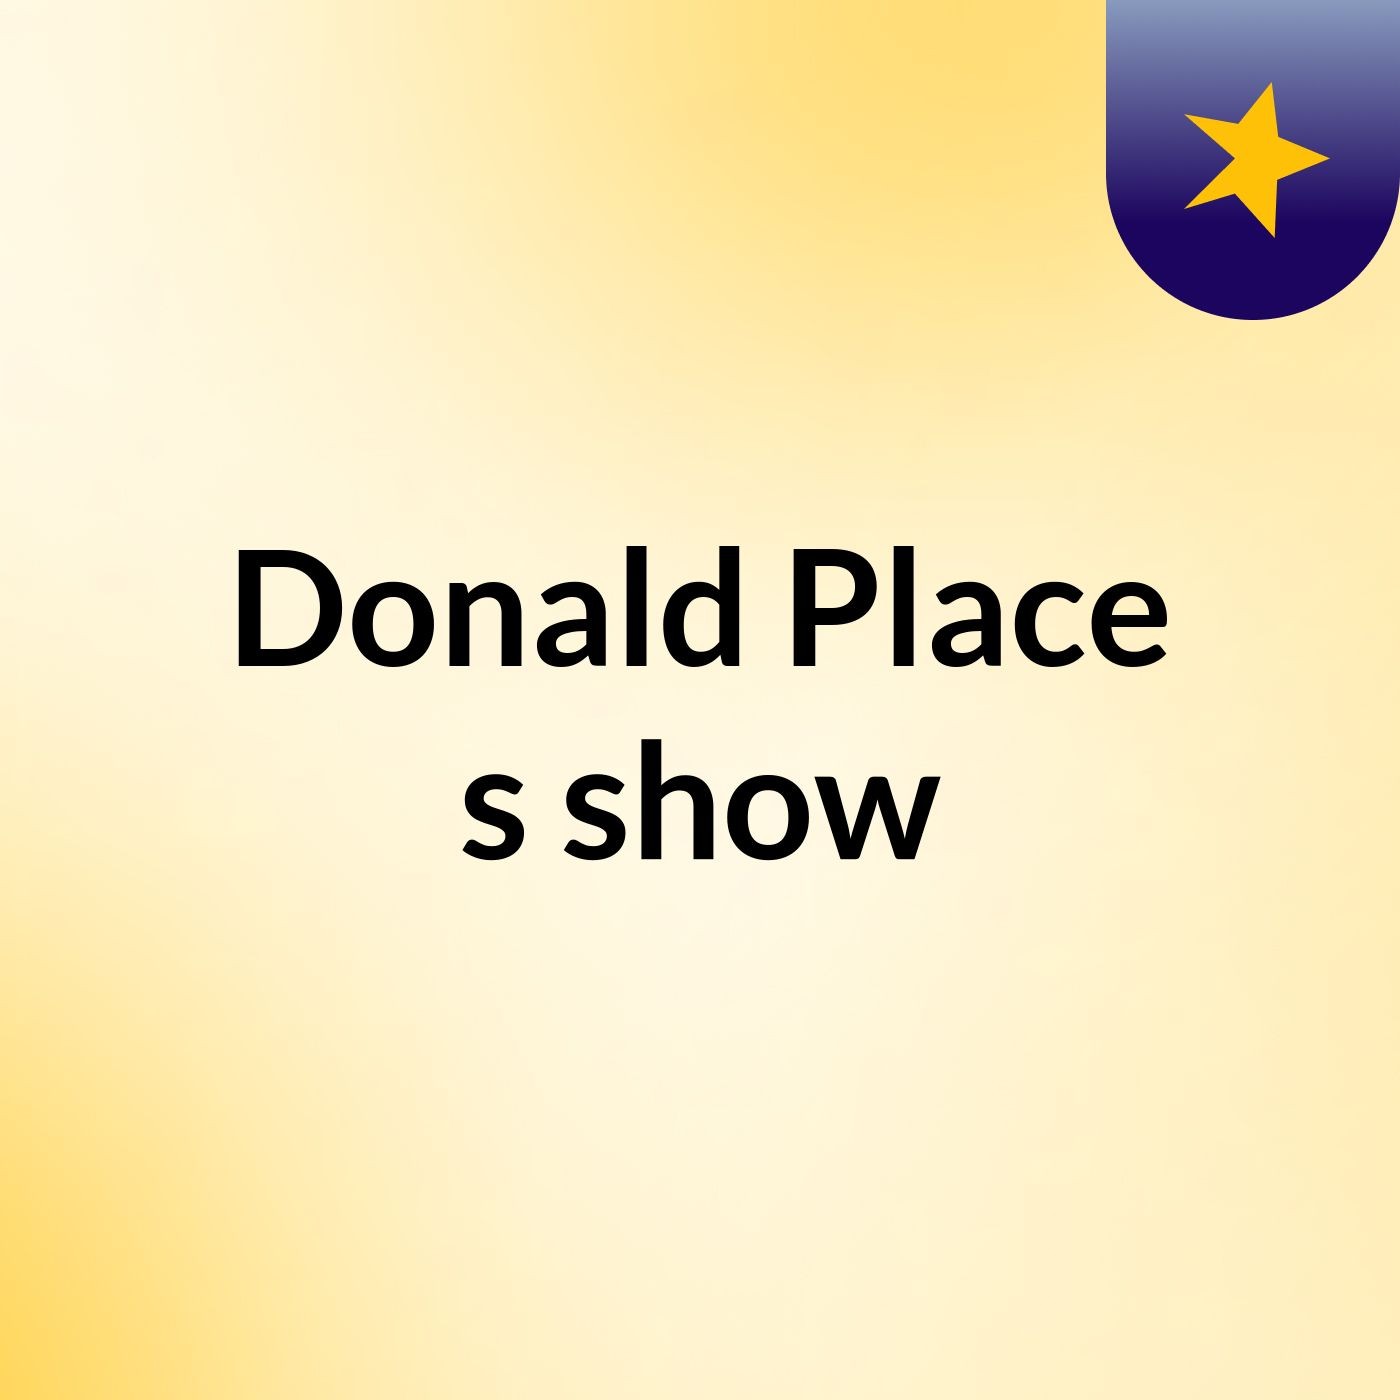 Donald Place's show